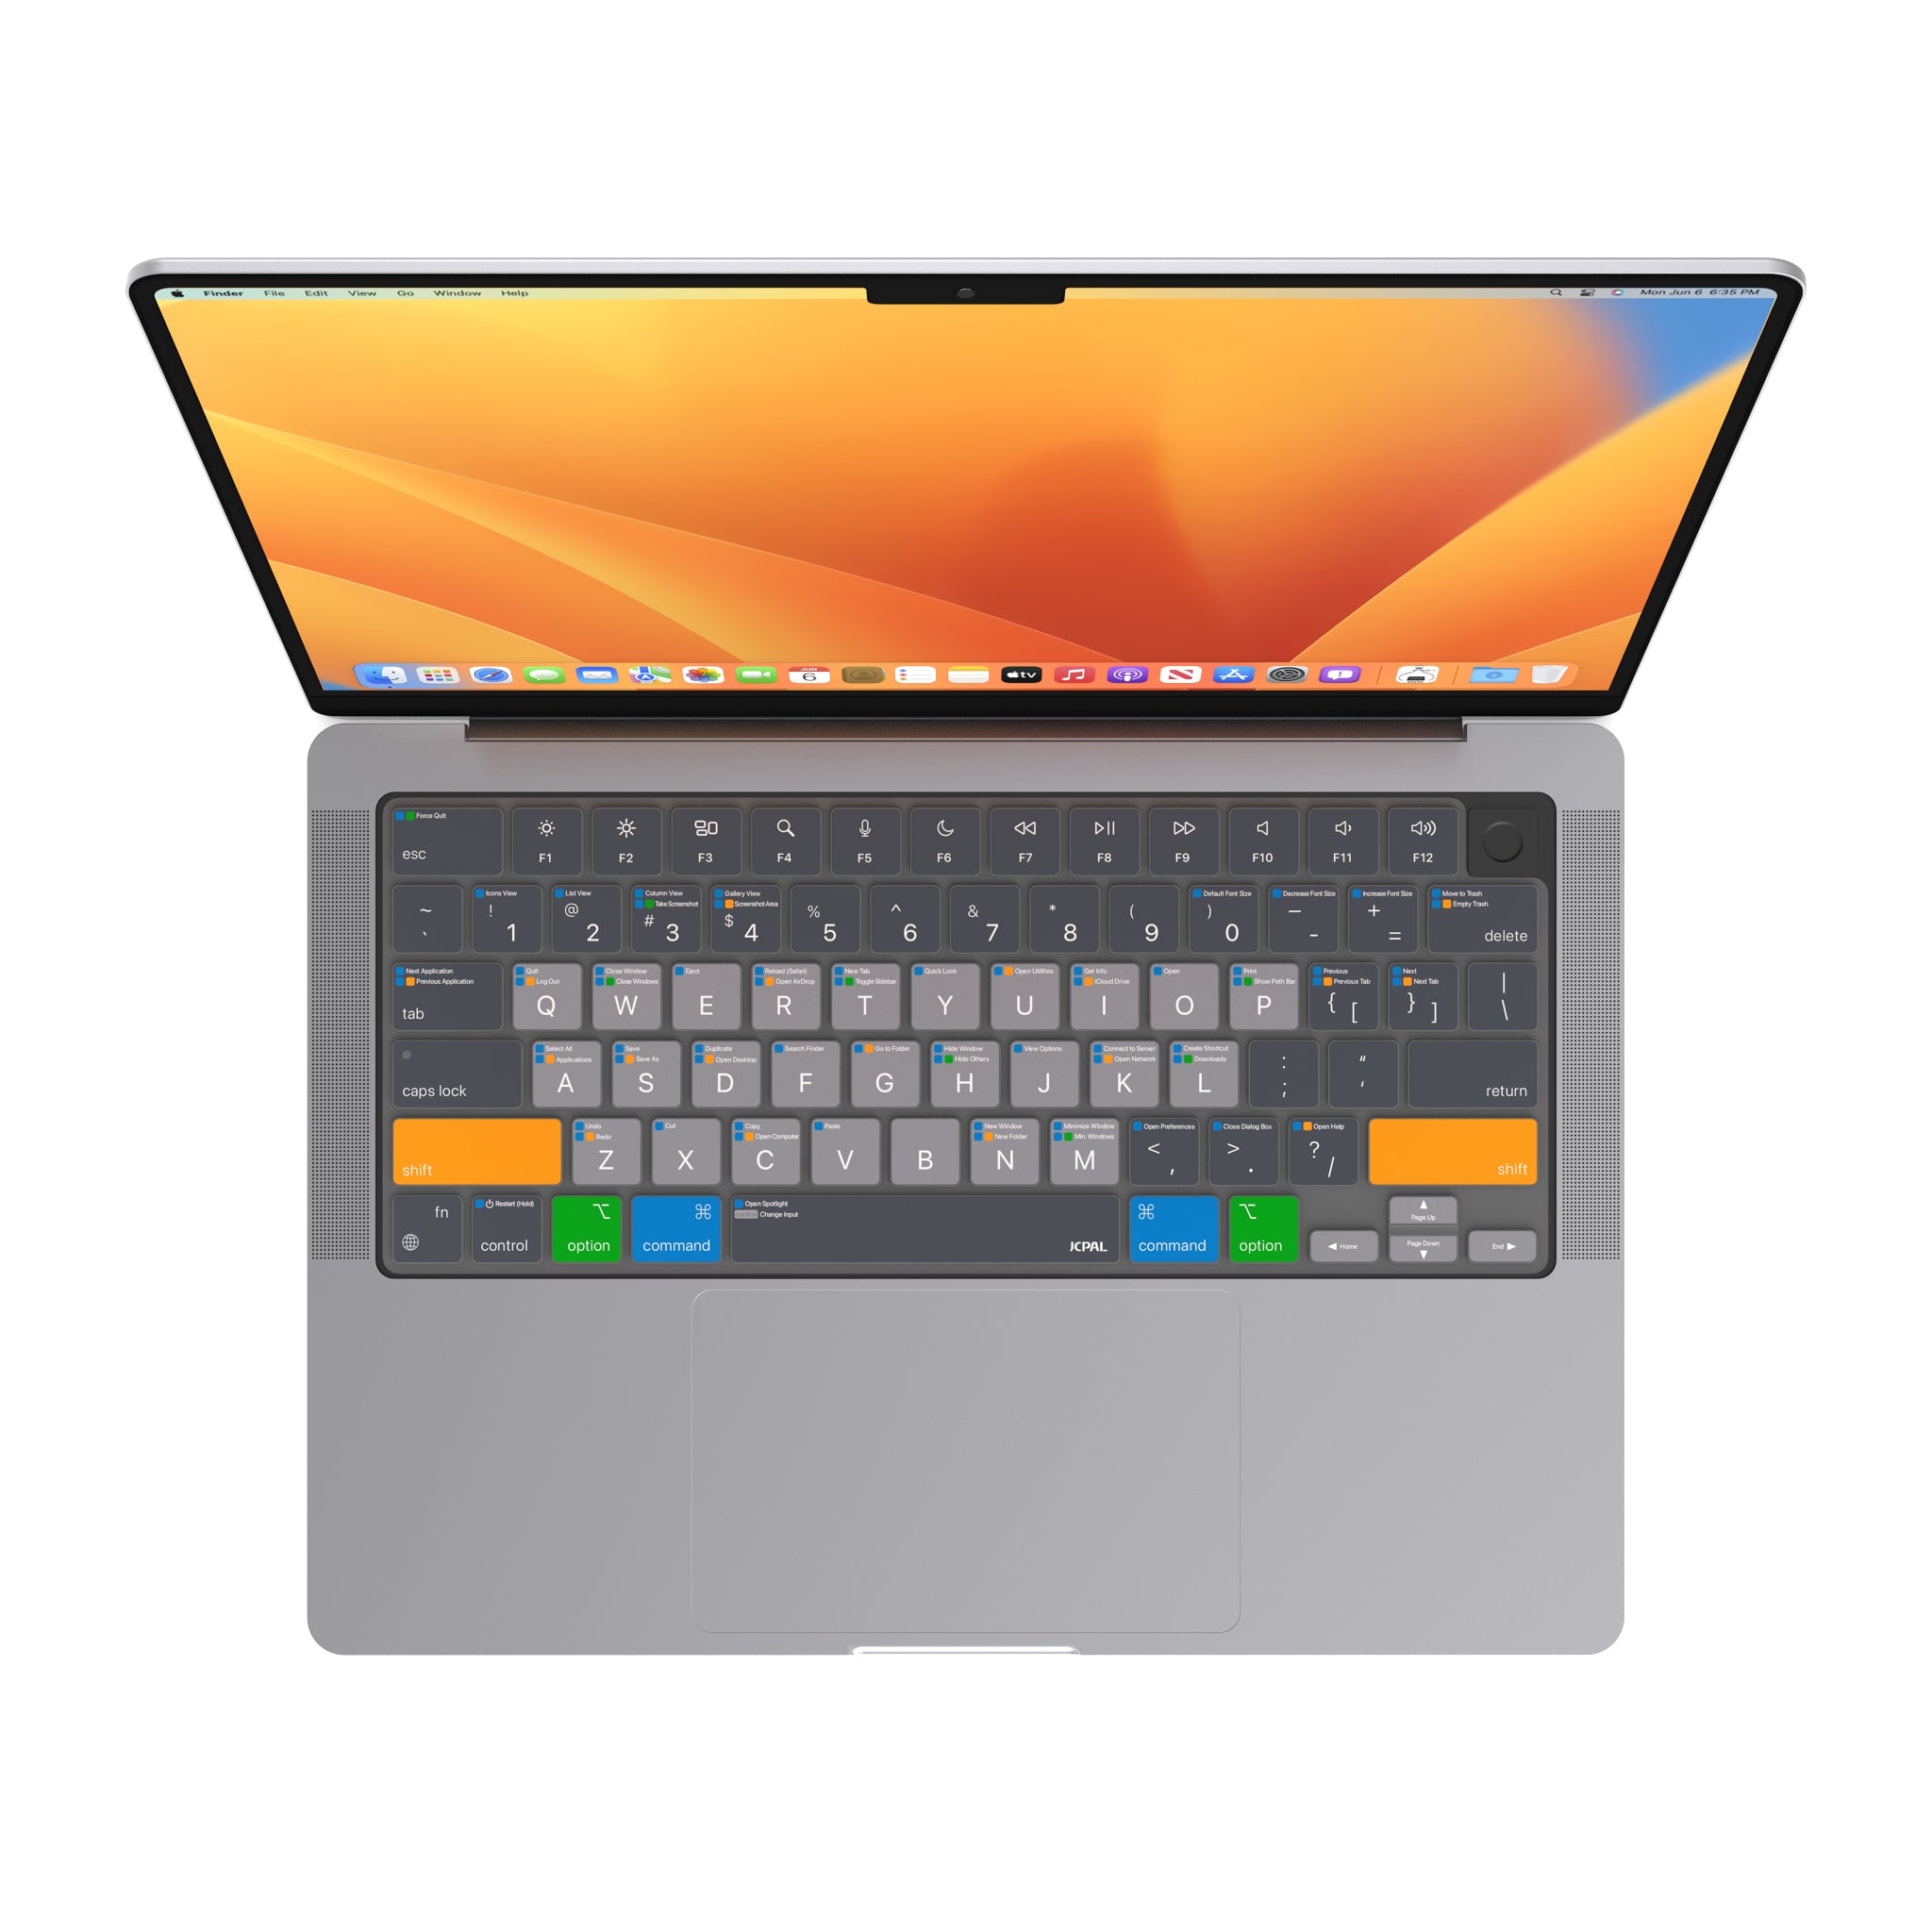 Test : KeySonic parvient à imiter correctement le clavier Mac d'Apple